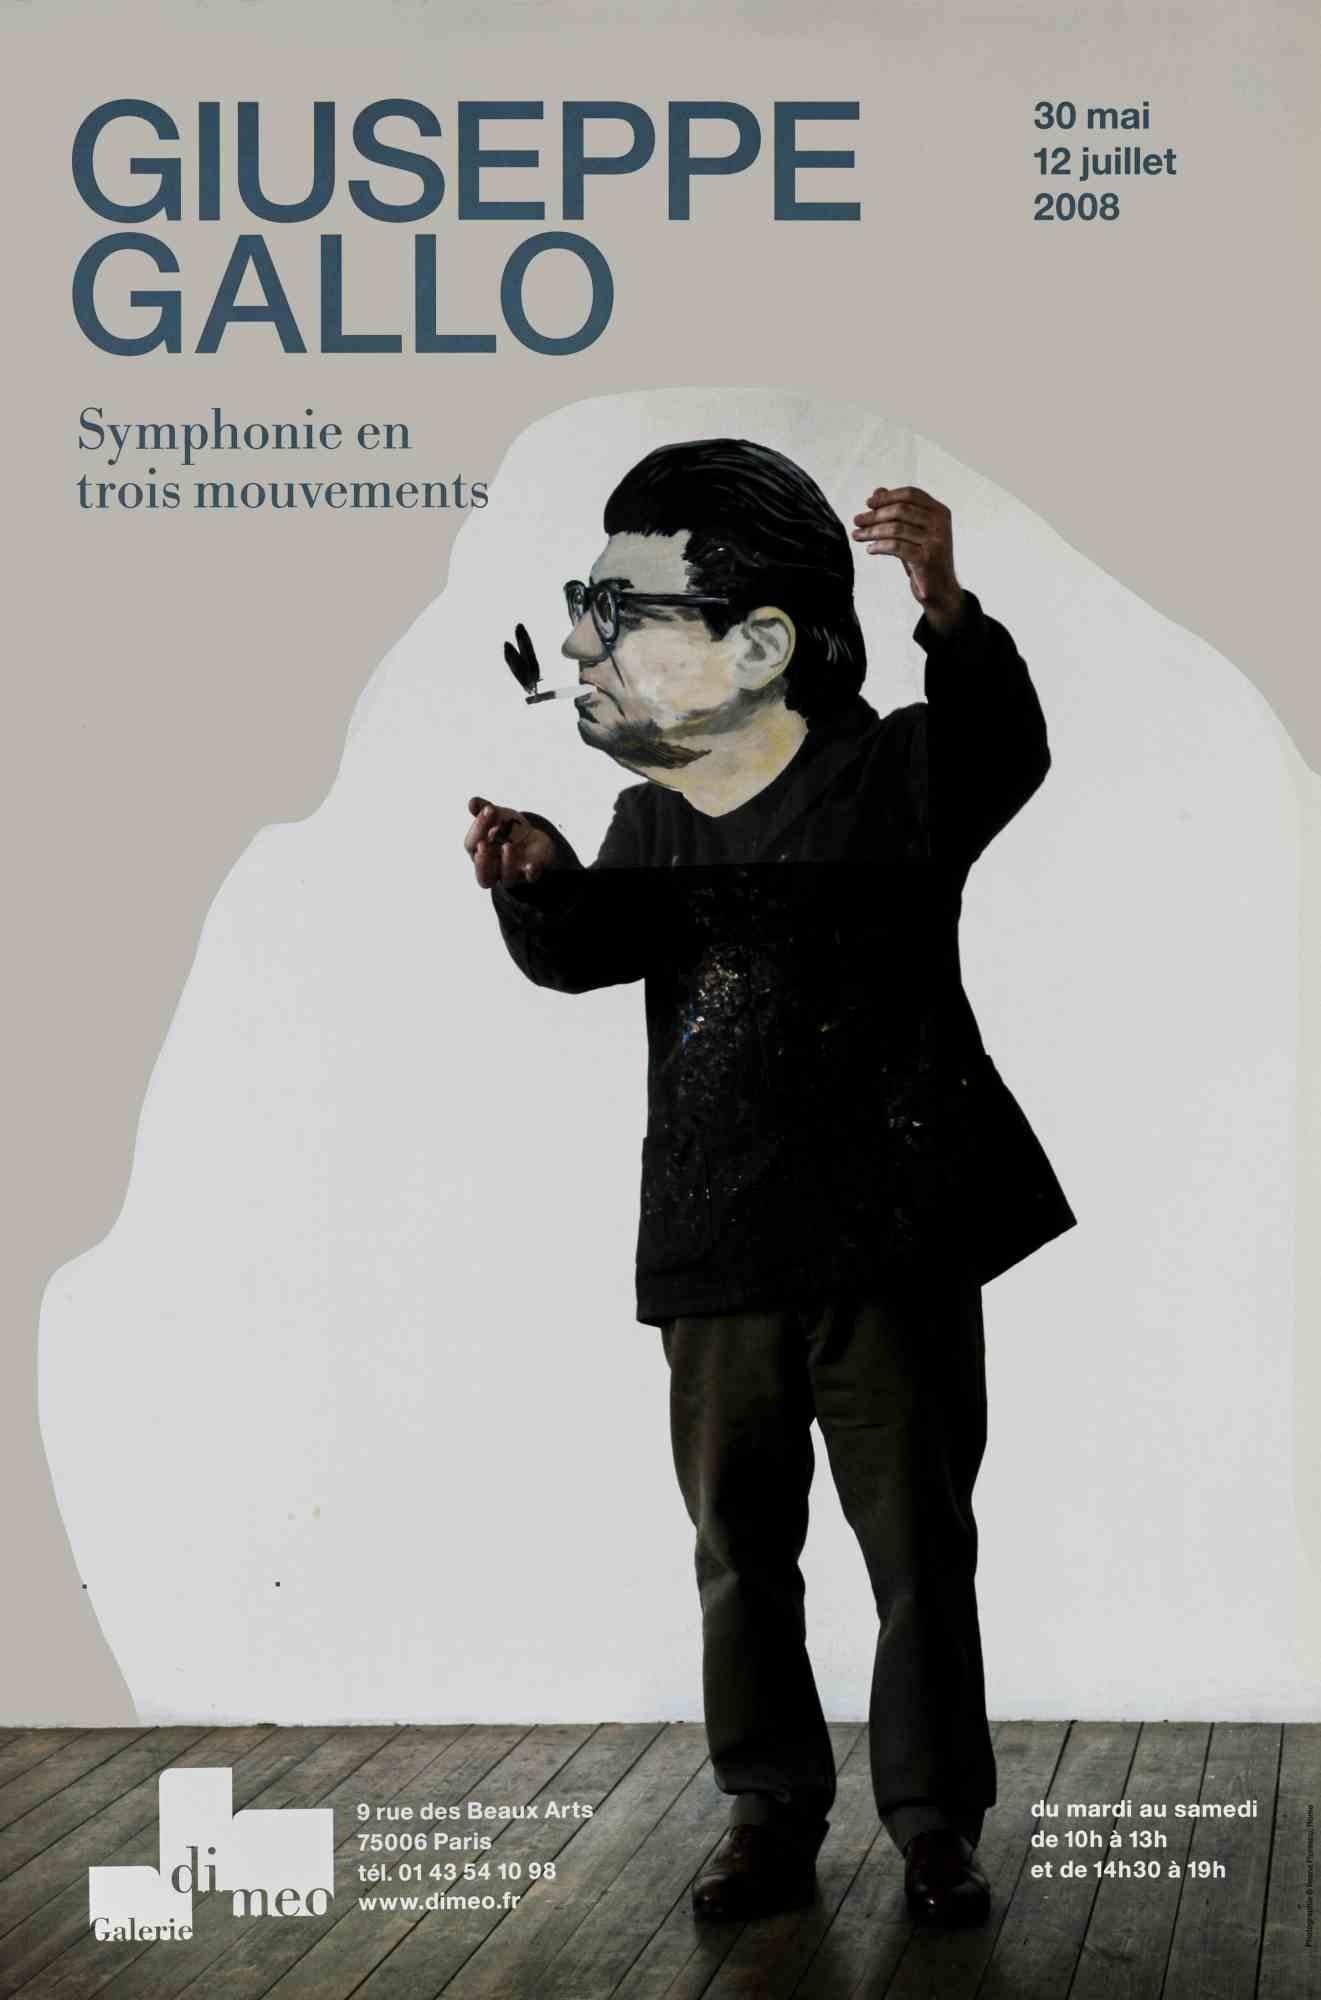 Giuseppe Gallo. Symphonie en trois mouvements ist ein Vintage-Offsetplakat aus dem Jahr 2008.

Dieses Kunstwerk wurde anlässlich der Ausstellung von Giuseppe Gallo in der Galerie Di Meo in Paris vom 30. Mai bis 12. Juli 2008 realisiert.

Gute